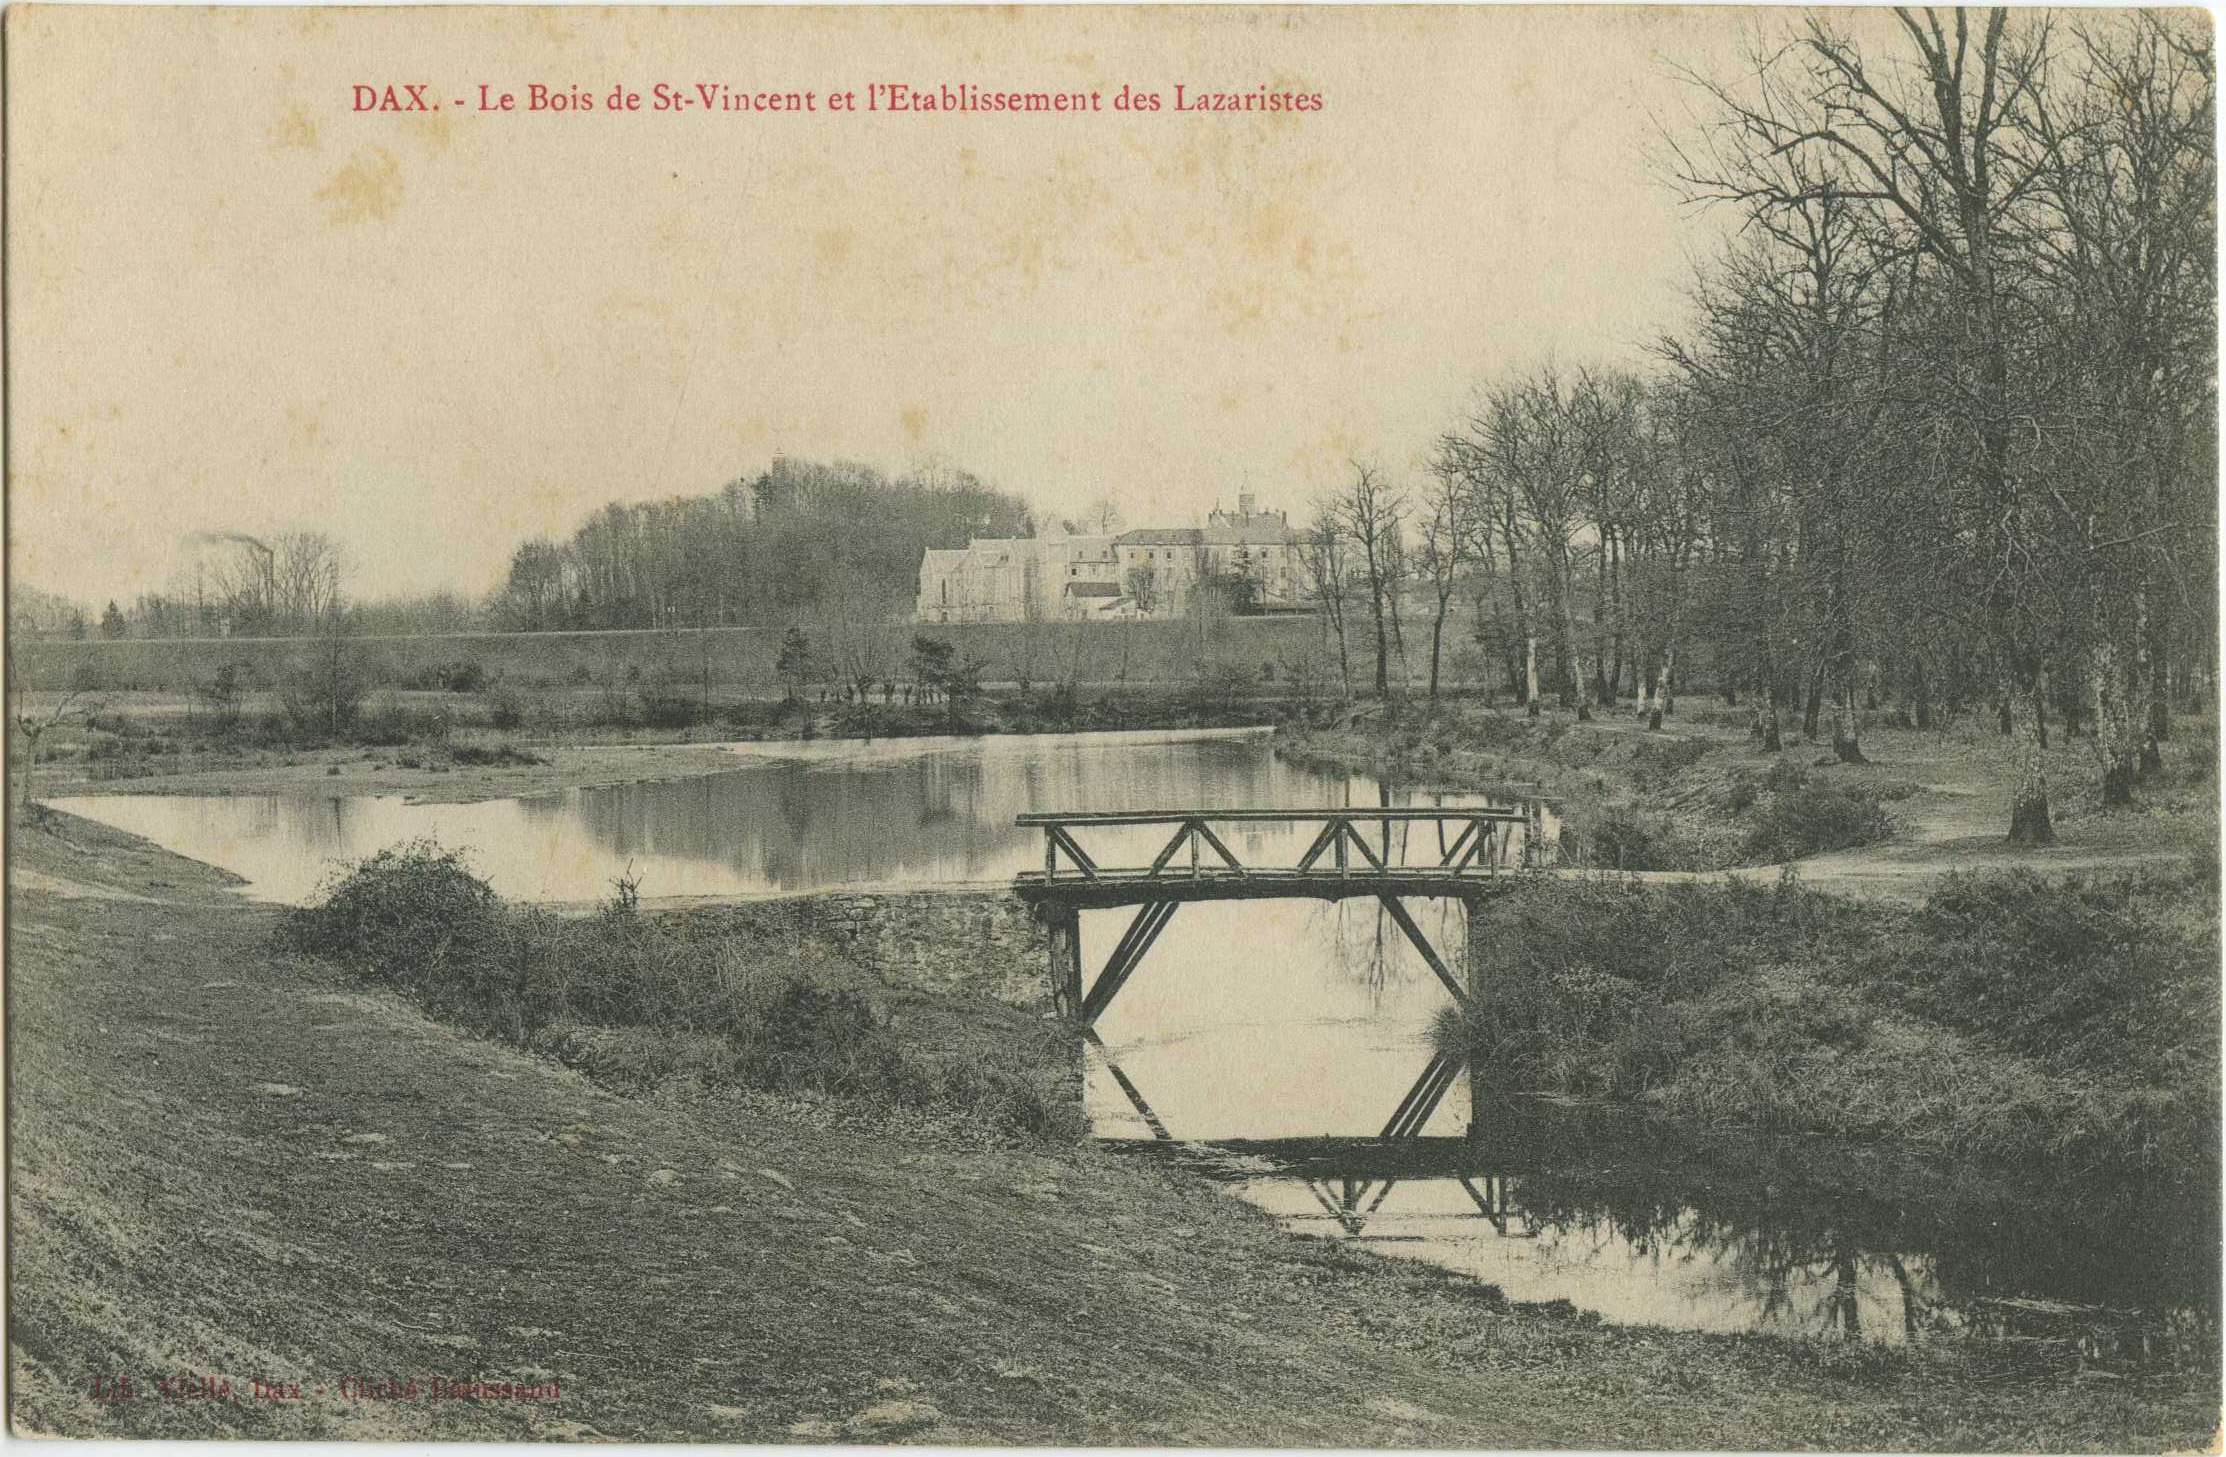 Dax - Le Bois de St-Vincent et l'Etablissement des Lazaristes